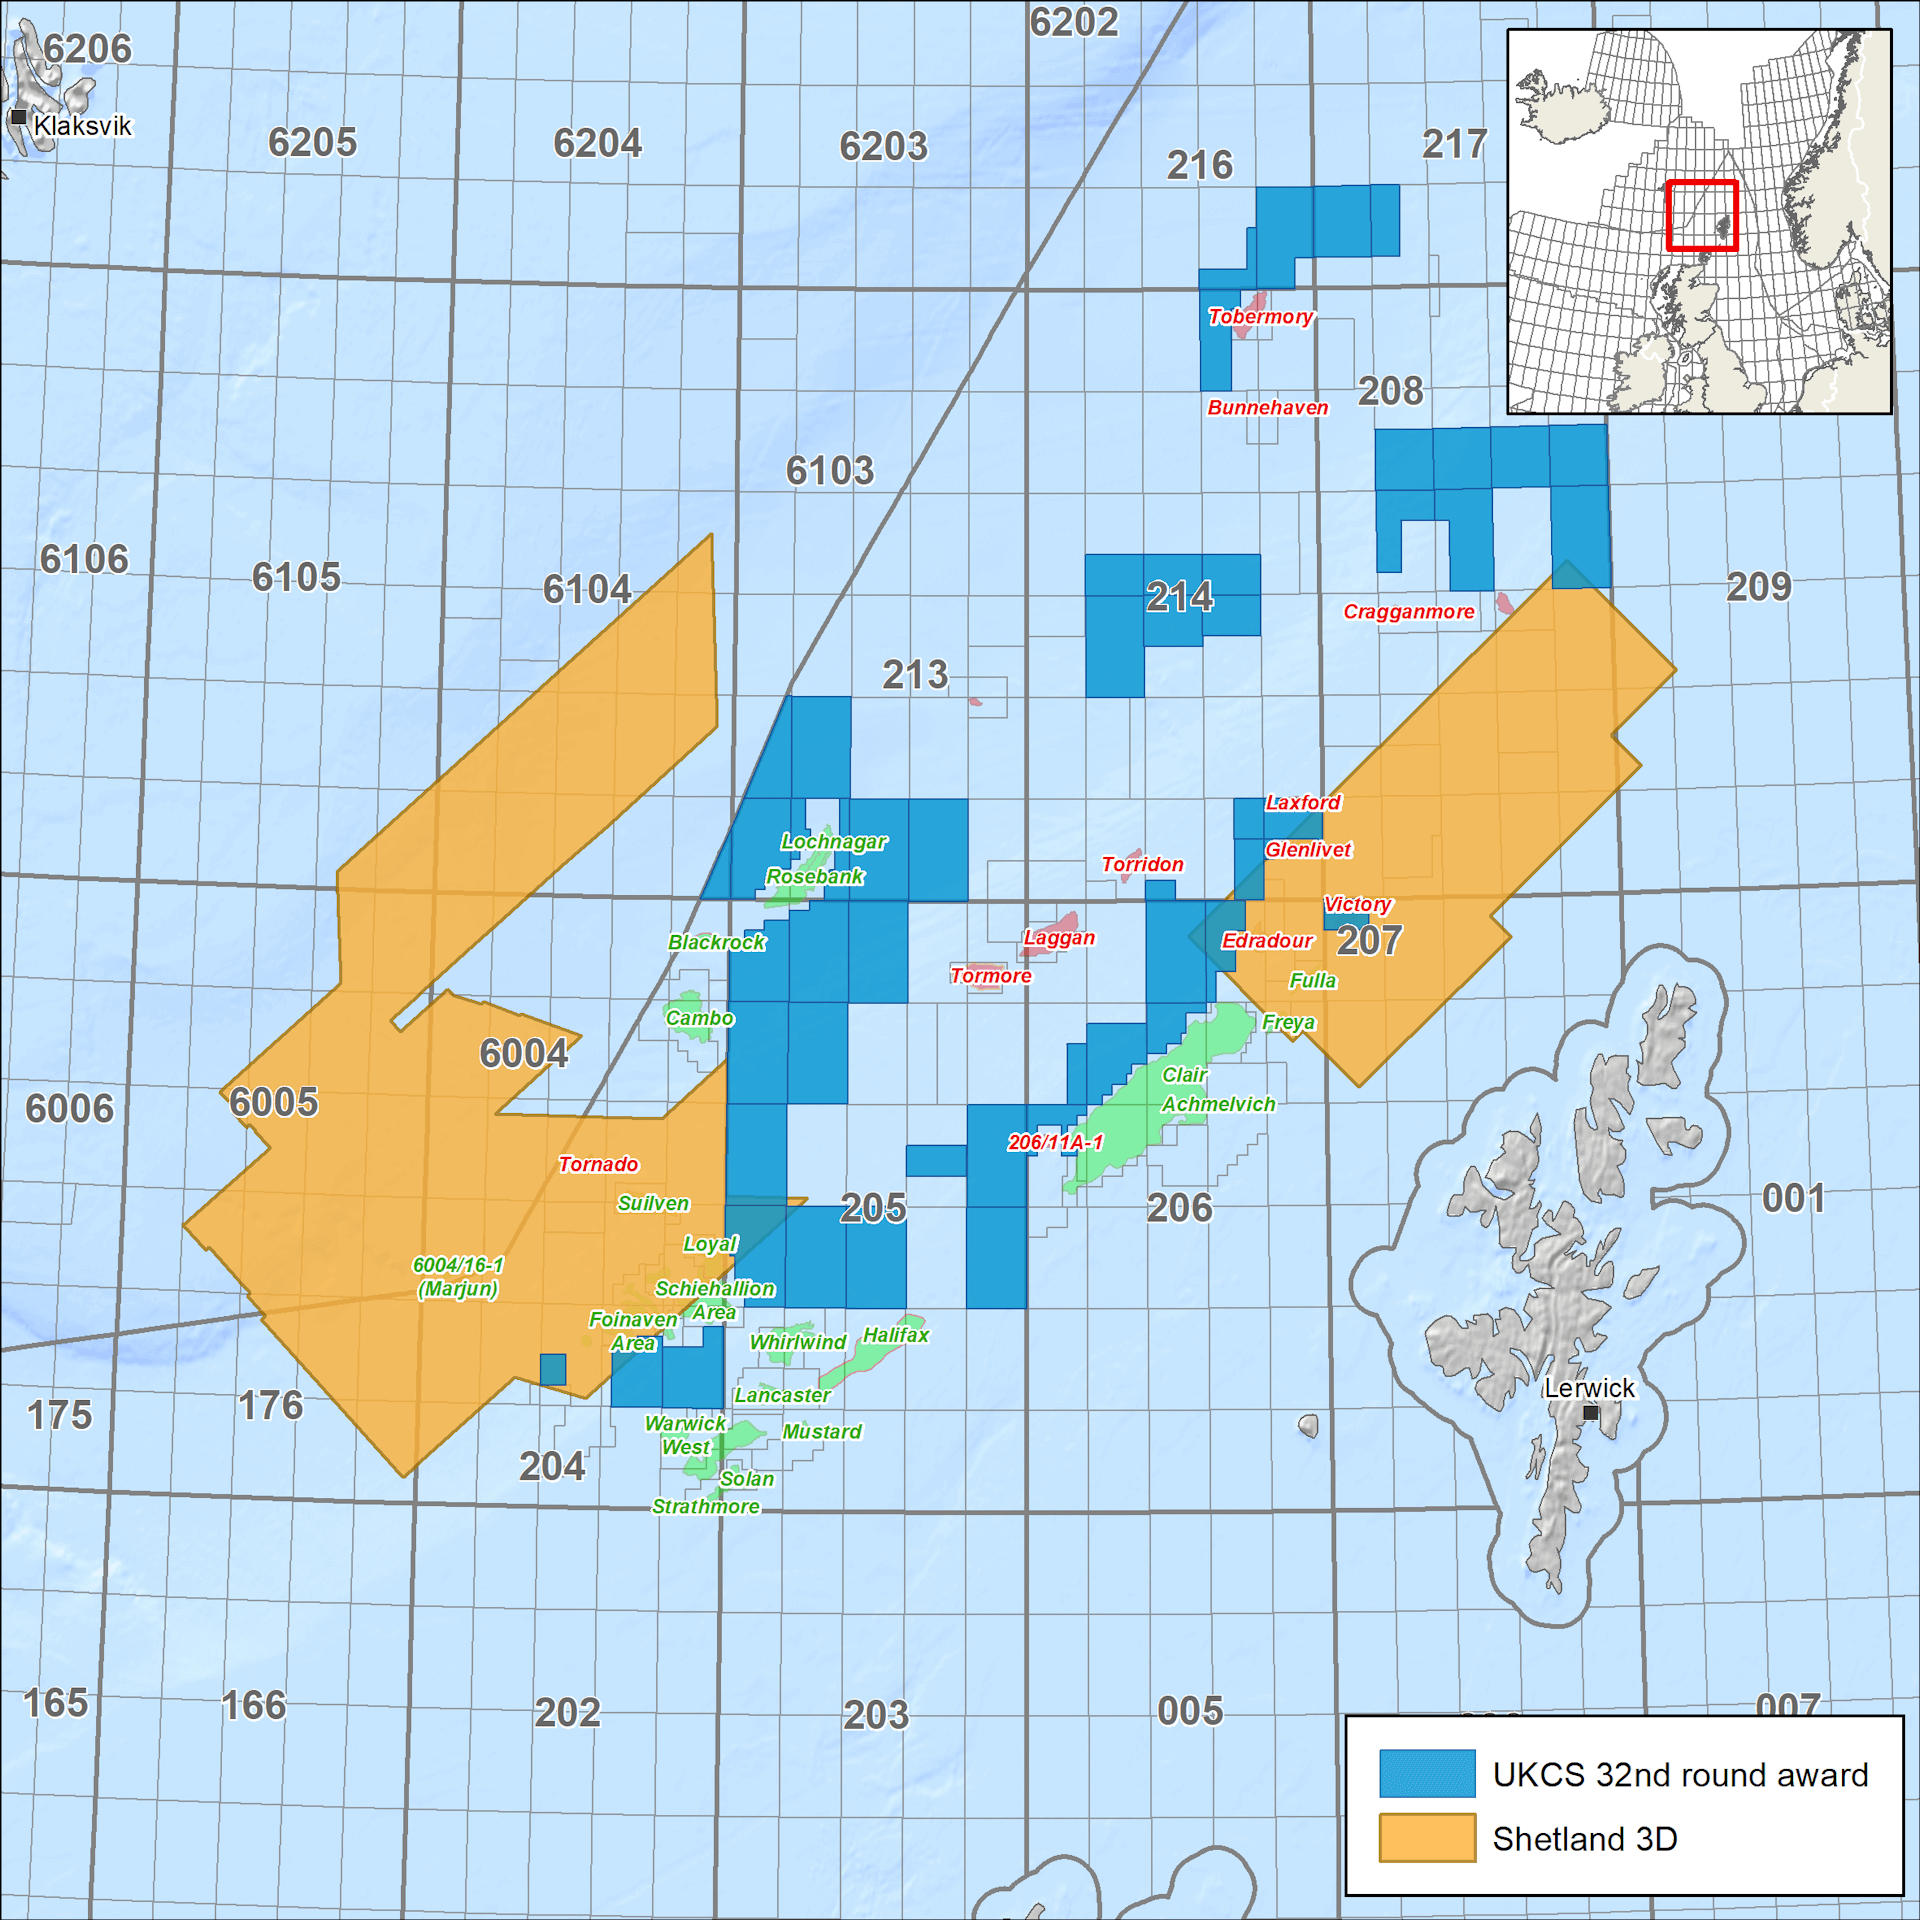 Multi-client seismic surveys – West of Shetland